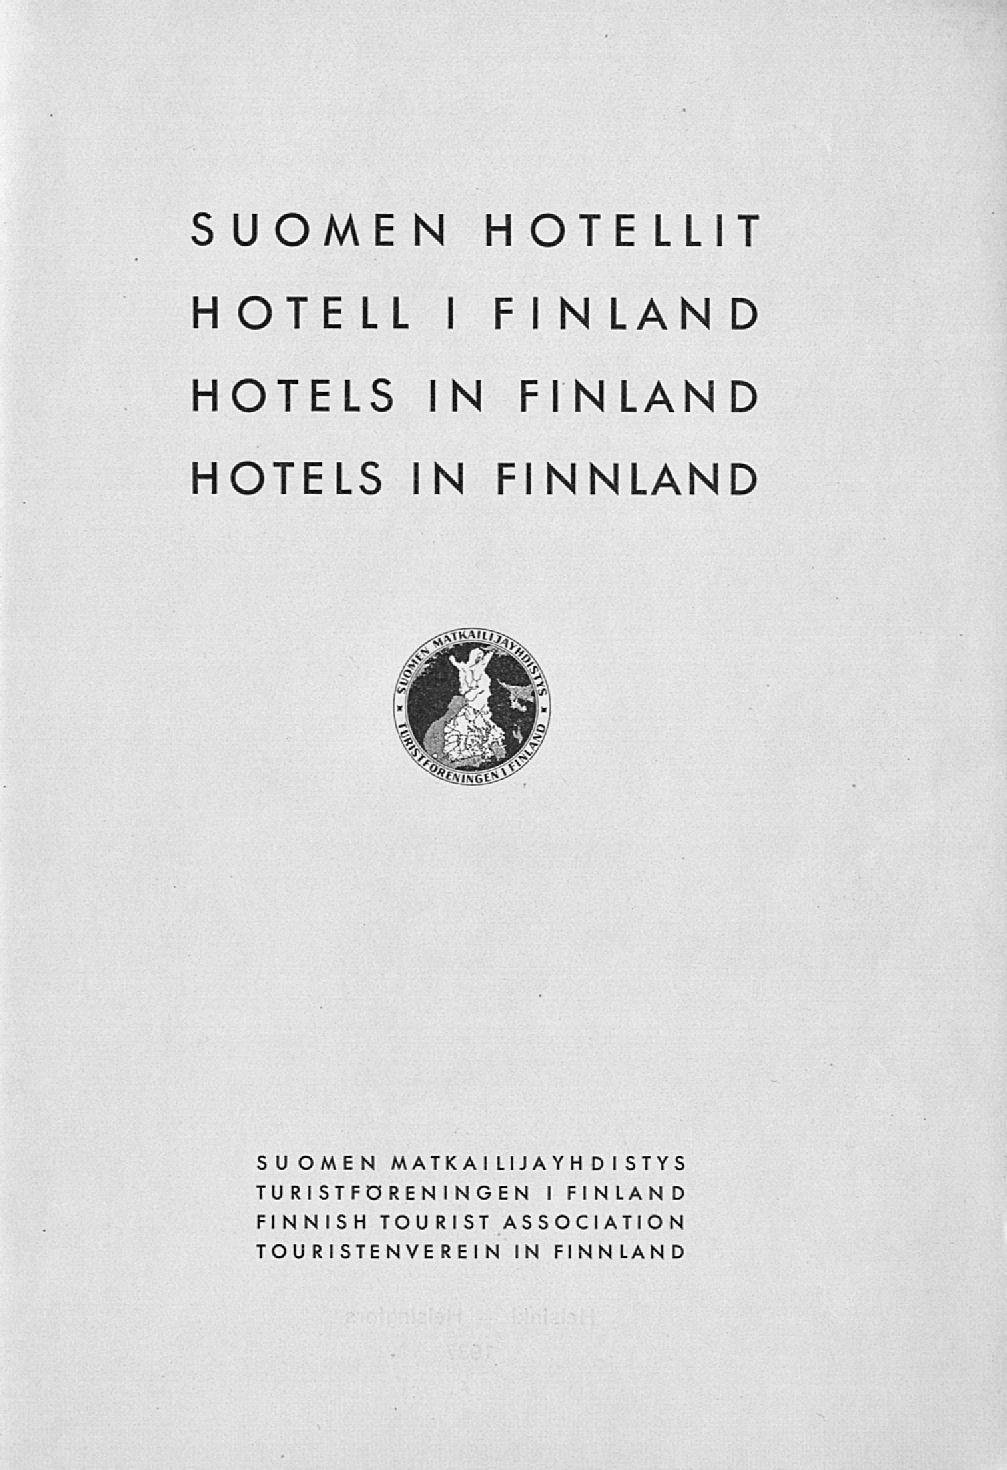 S UOME N H OTE LLIT H OTE LL I F I N LAN D HOTELS IN FINLAND HOTELS IN FINNLAND SUOMEN